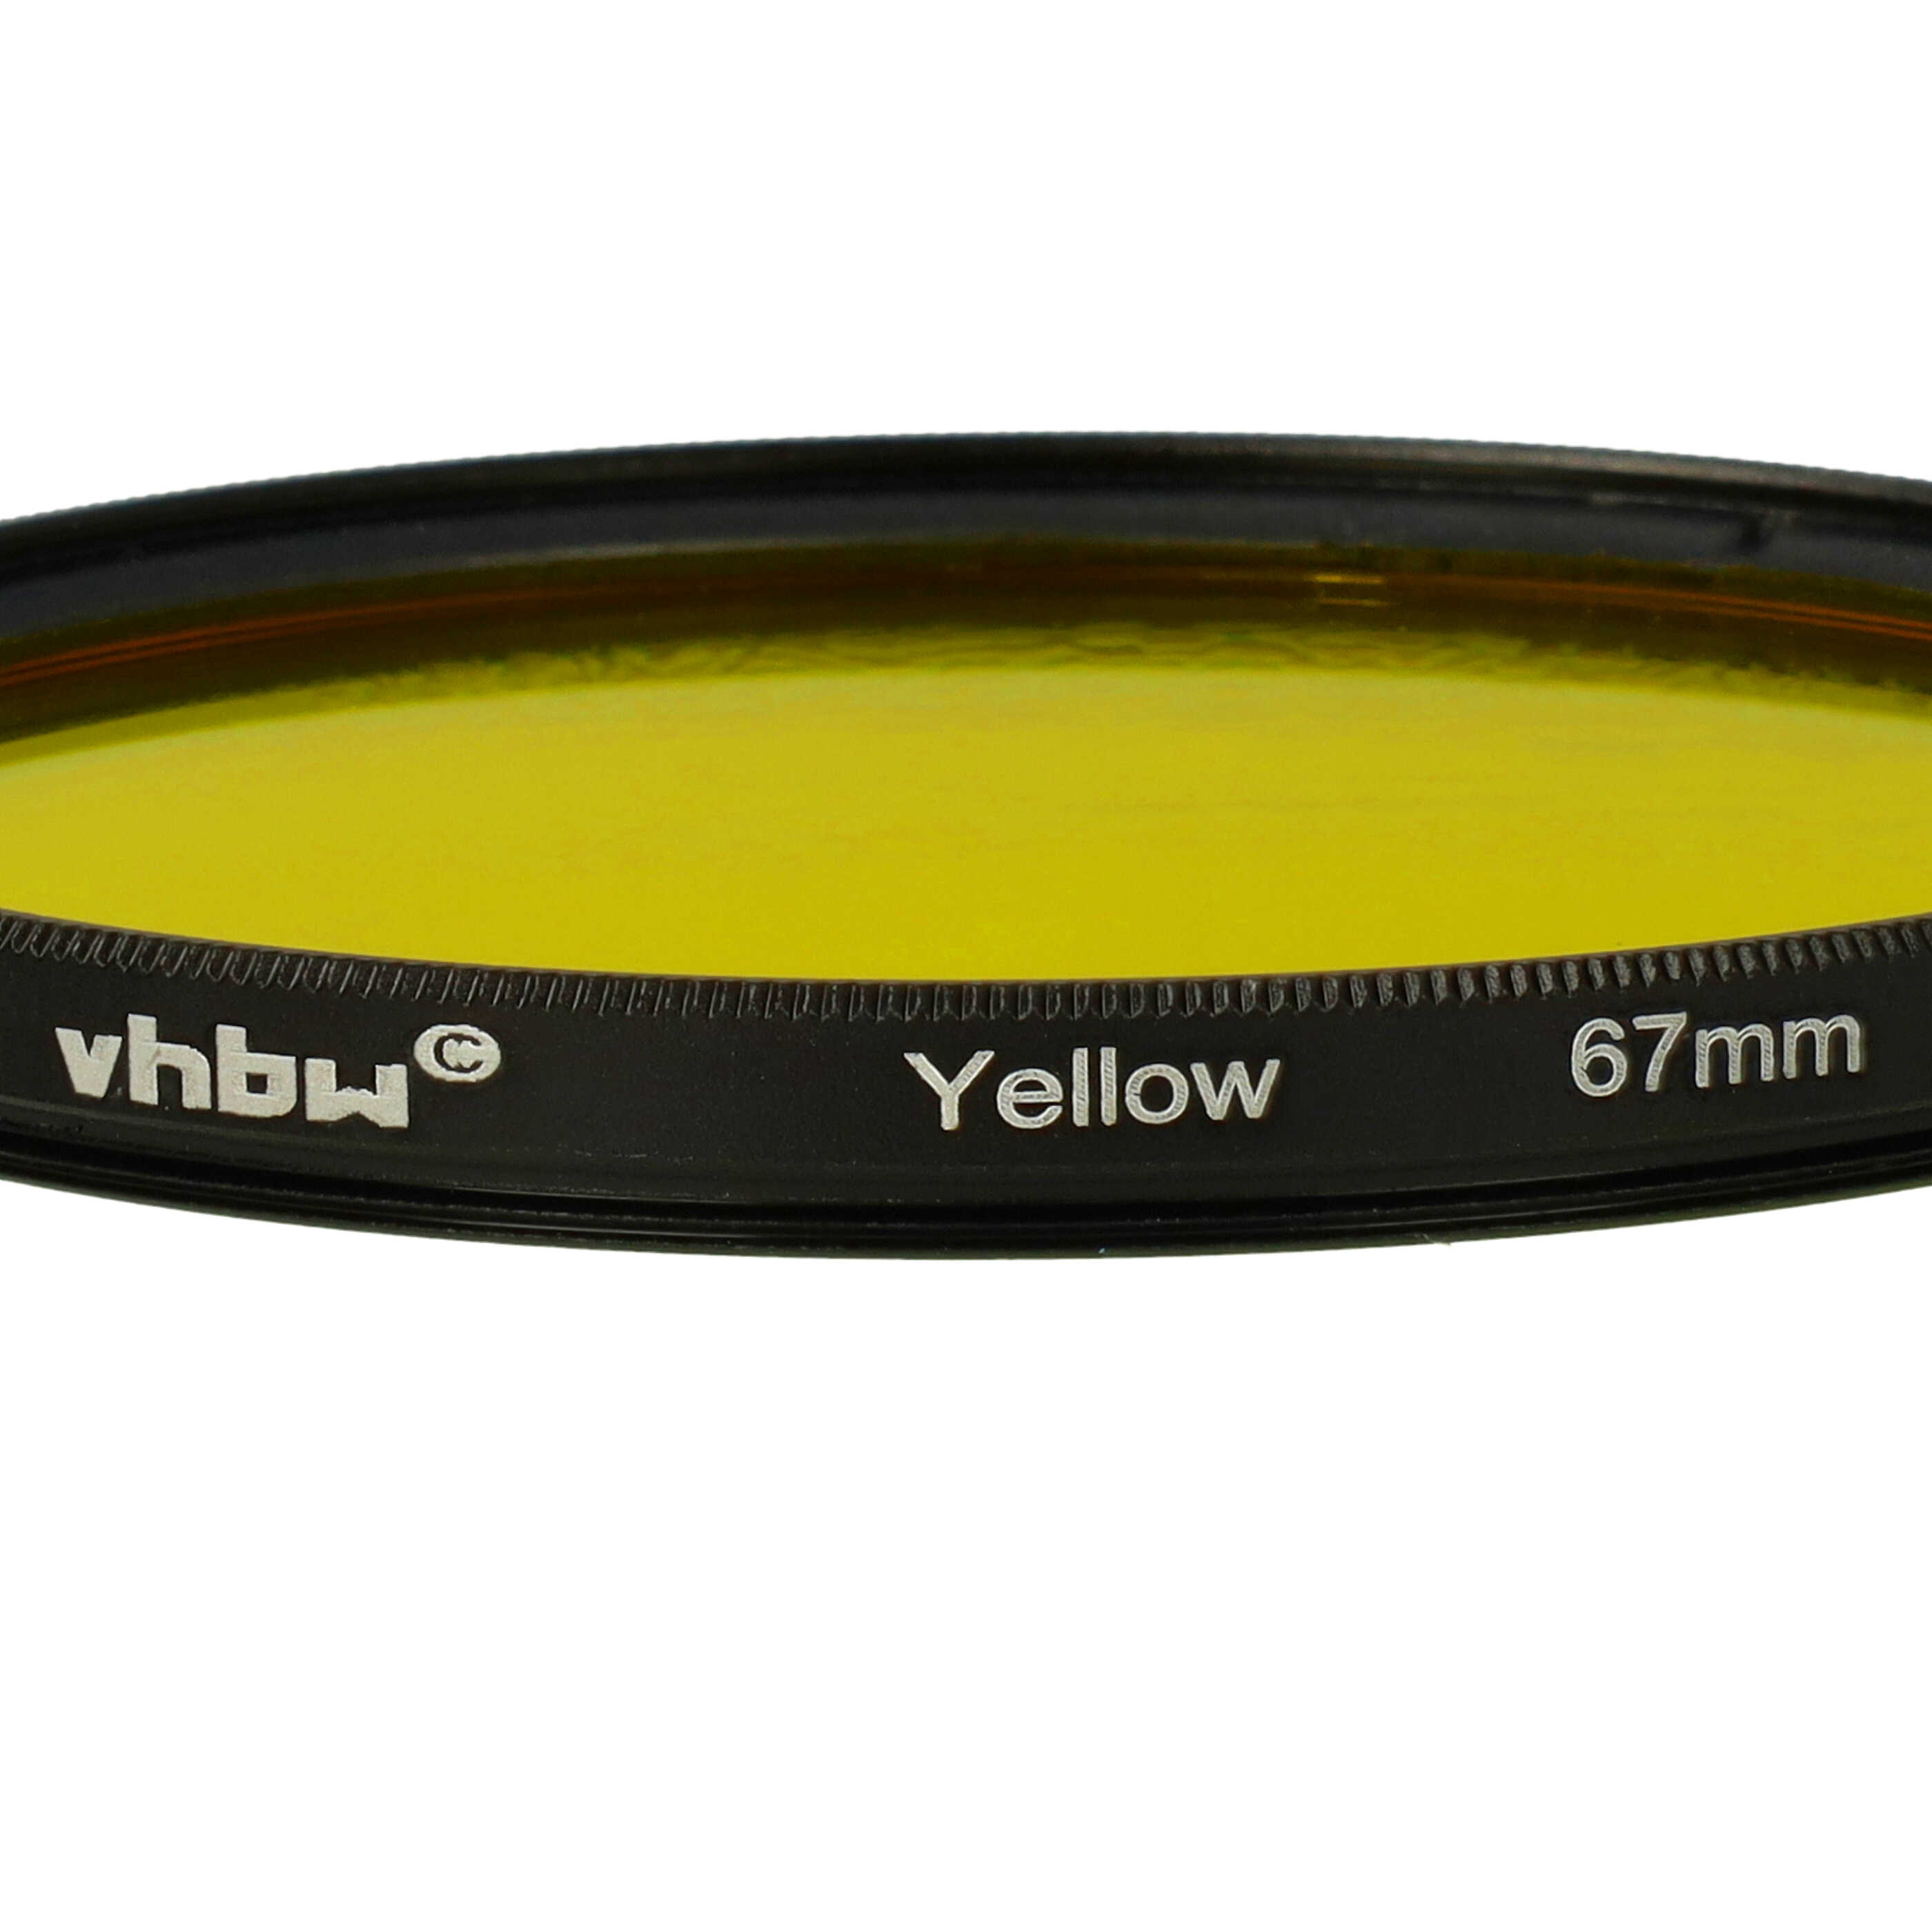 Filtro de color para objetivo de cámara con rosca de filtro de 67 mm - Filtro amarillo